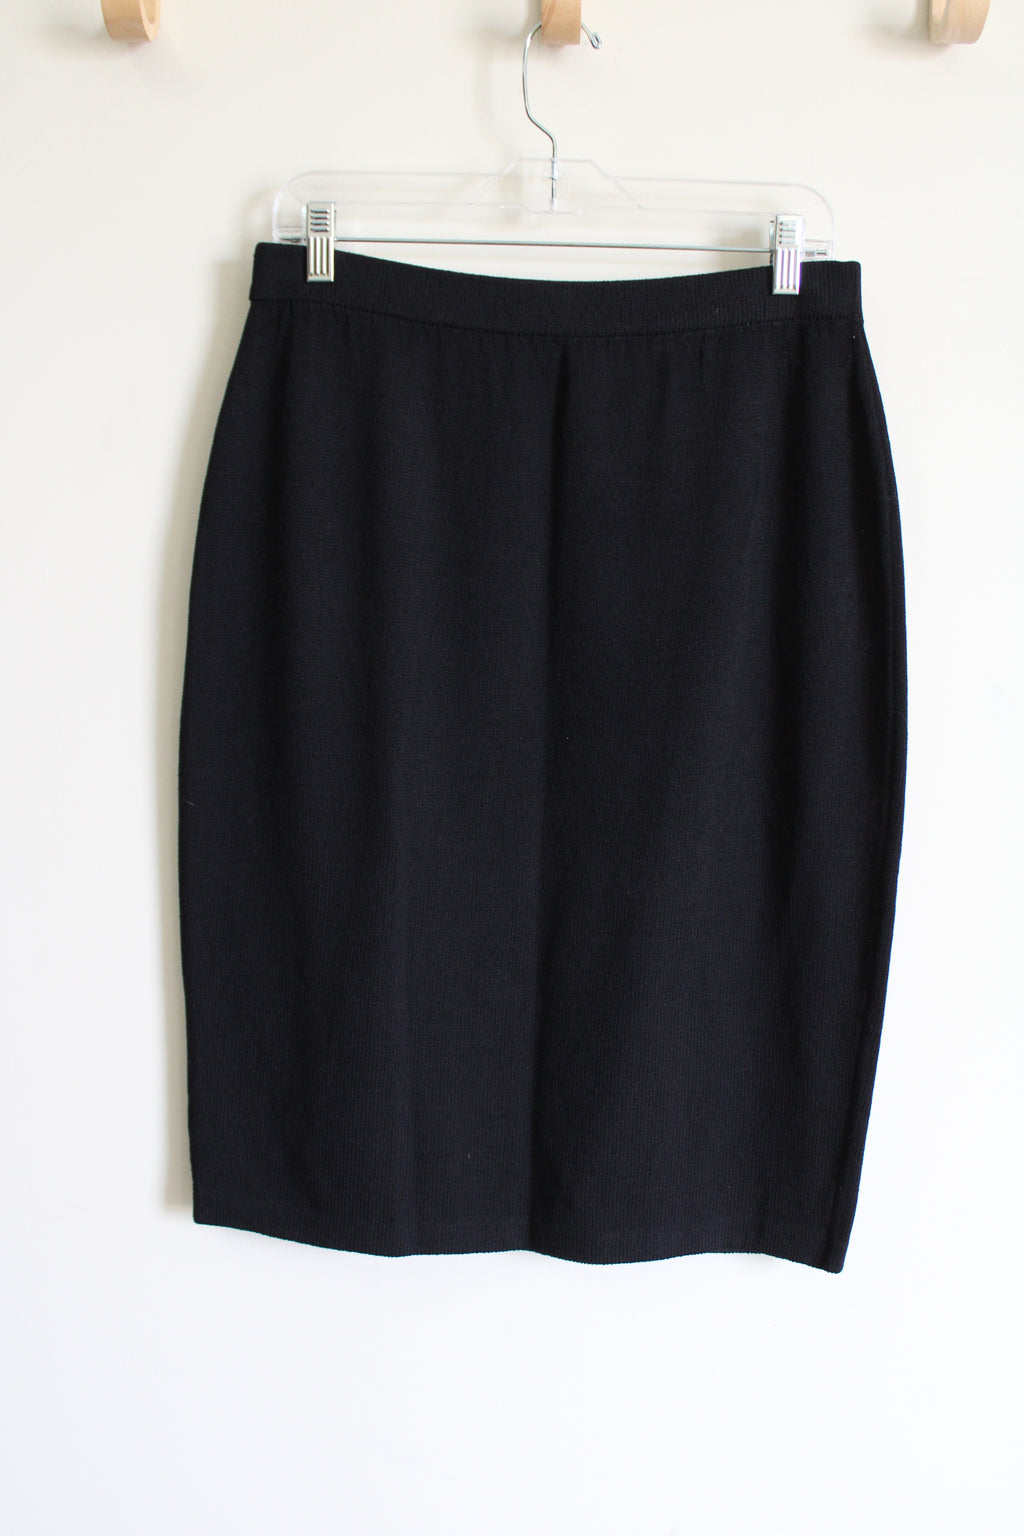 St. John Basics Black Knit Skirt | 10